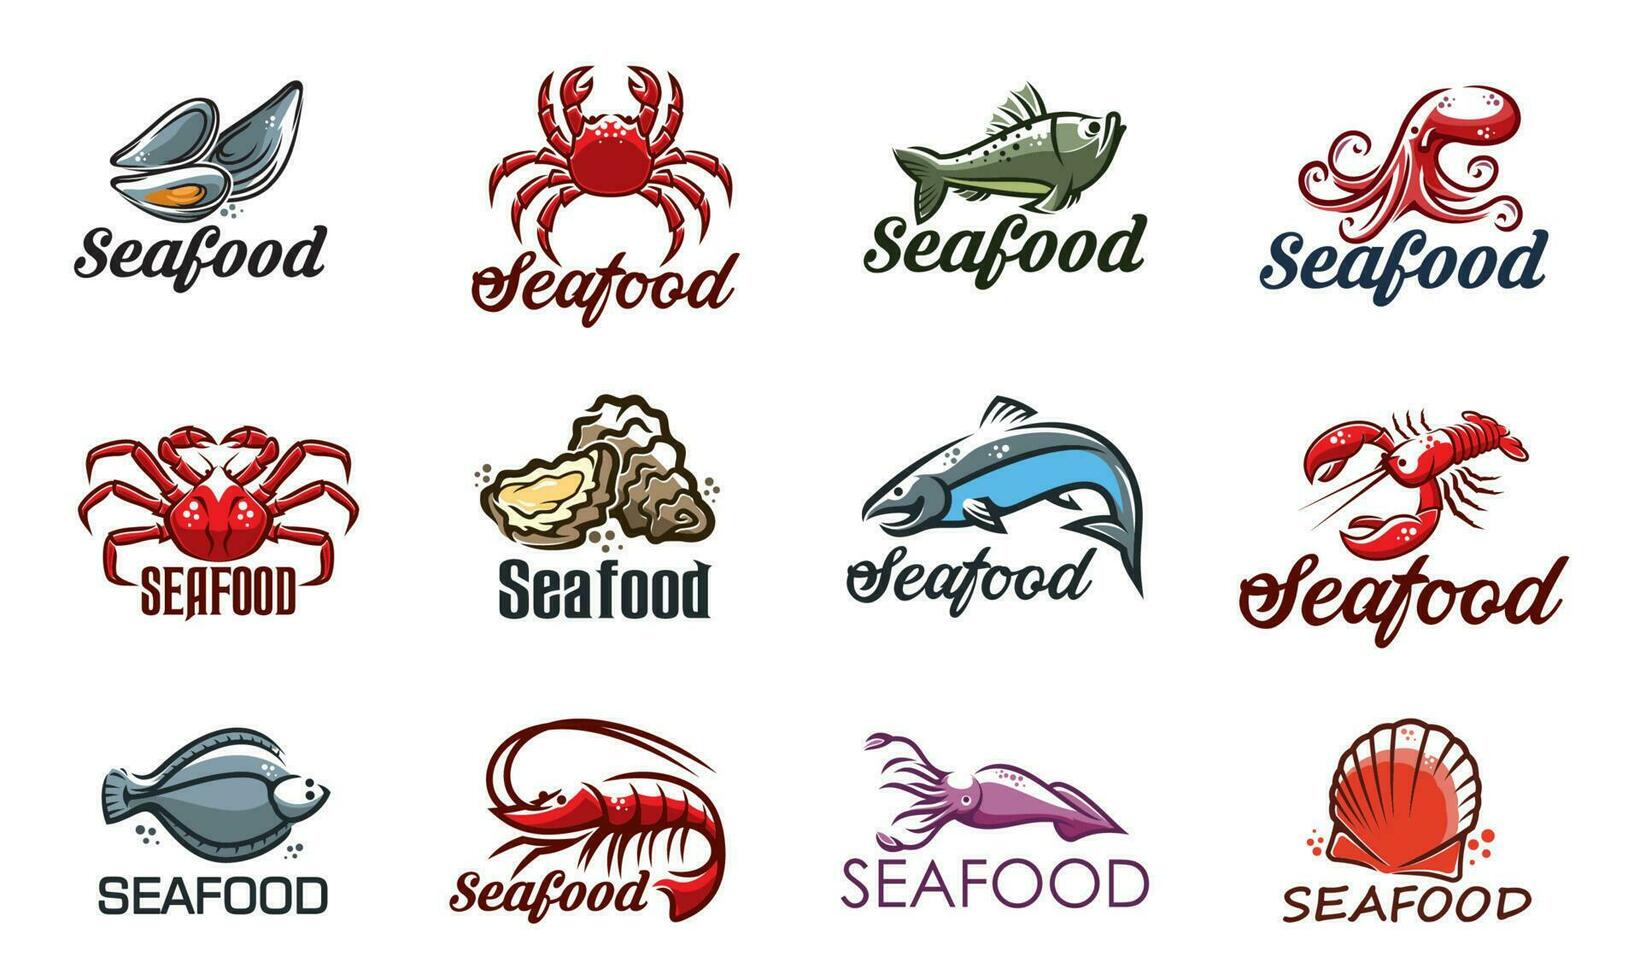 frutos do mar ícones com peixe, camarão, lagosta e caranguejo vetor